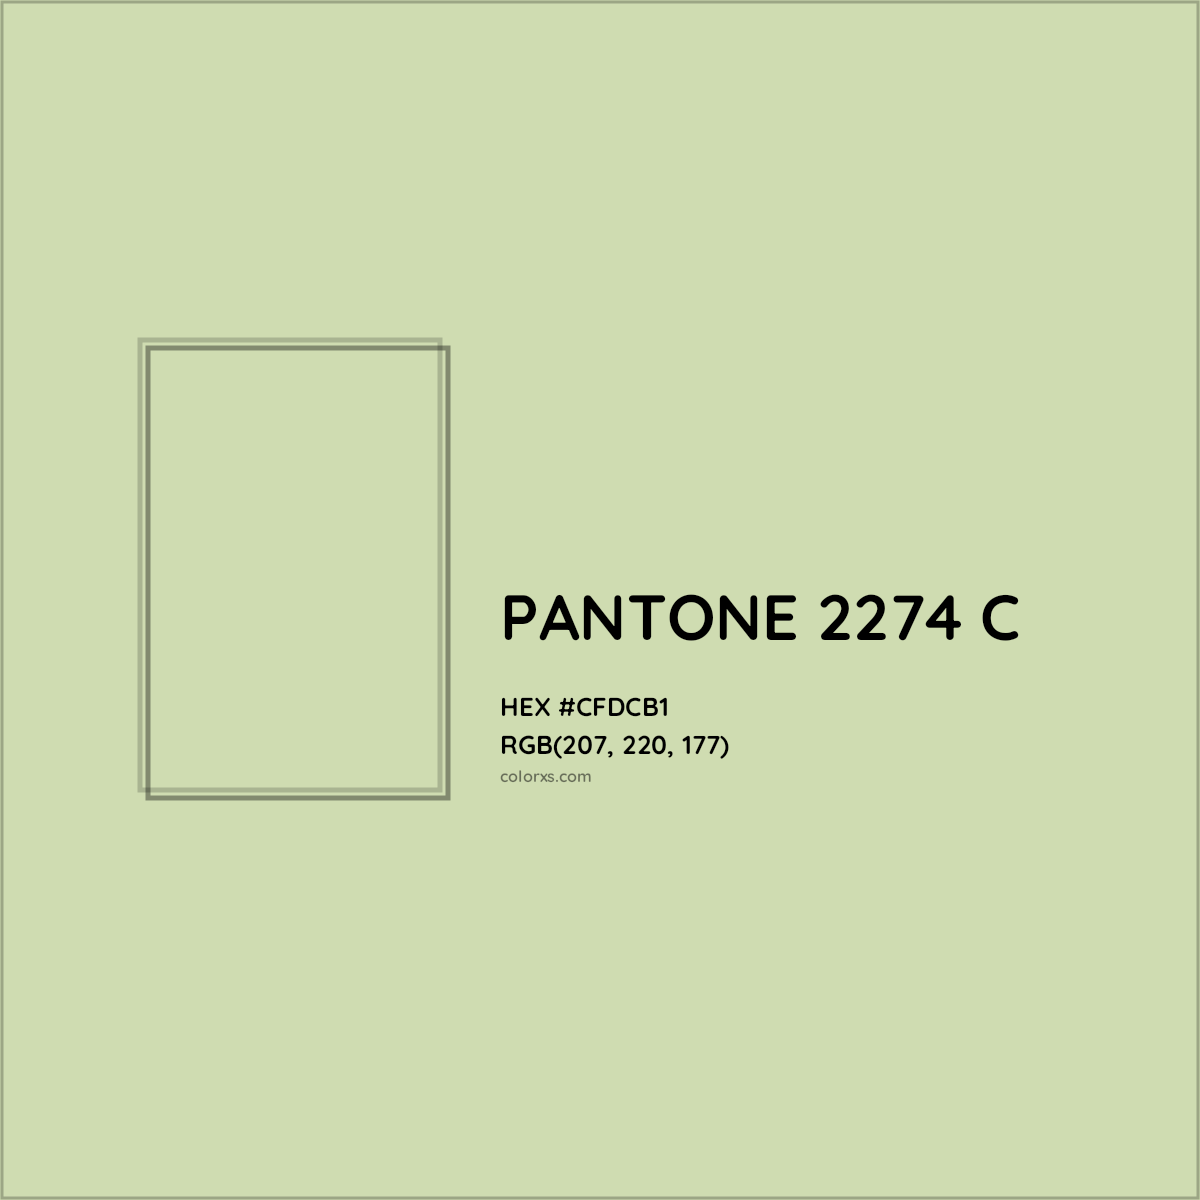 HEX #CFDCB1 PANTONE 2274 C CMS Pantone PMS - Color Code